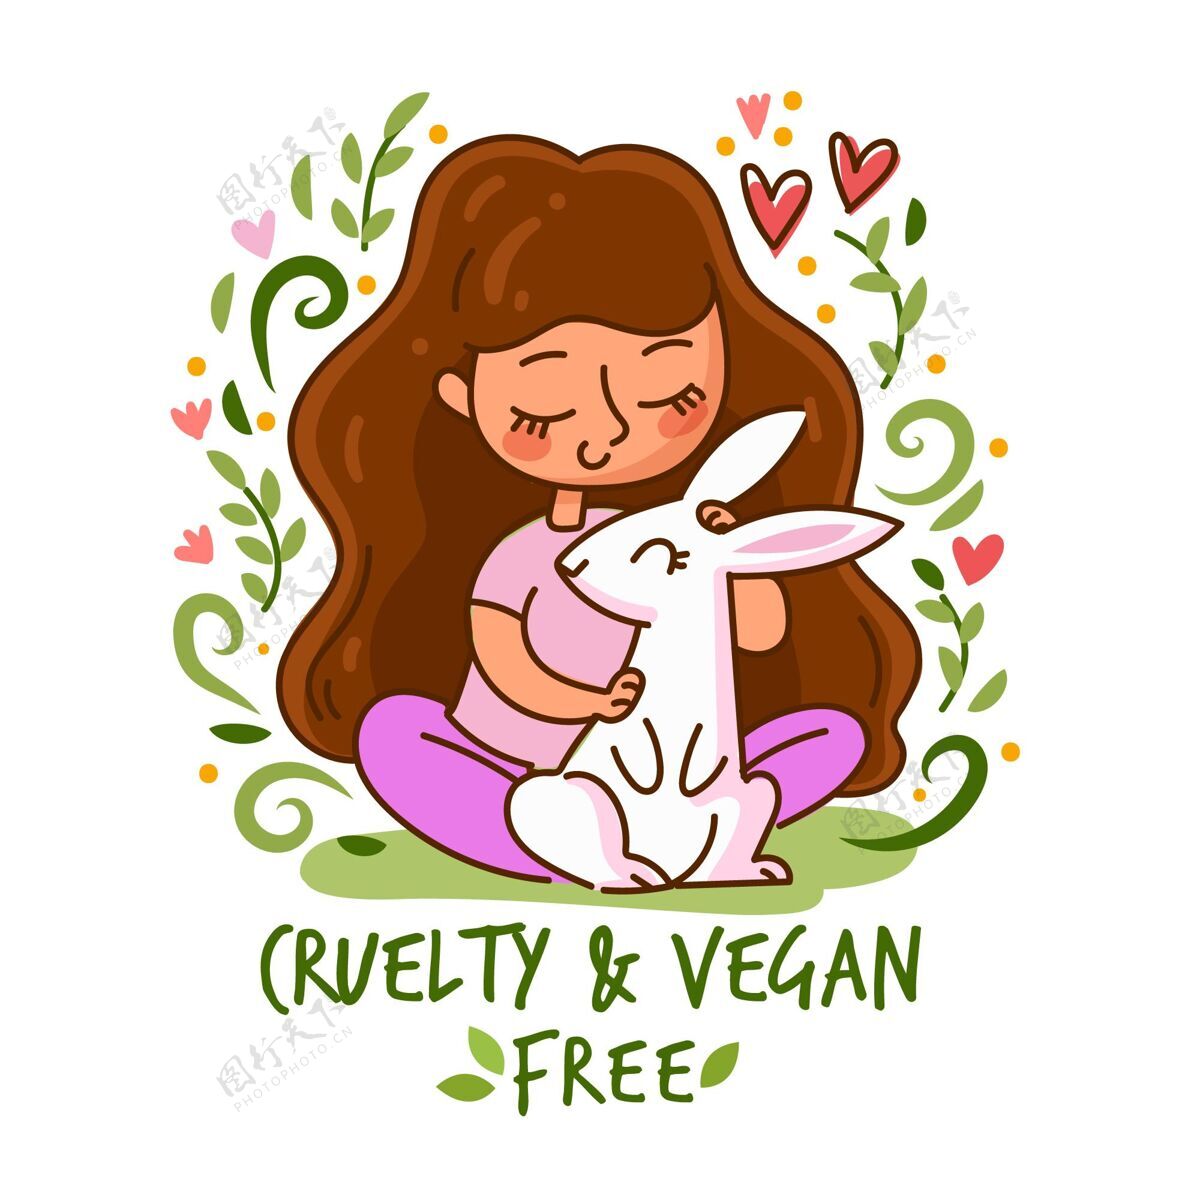 宠物残忍自由和素食主义的信息与妇女抱着兔子环保动物友好